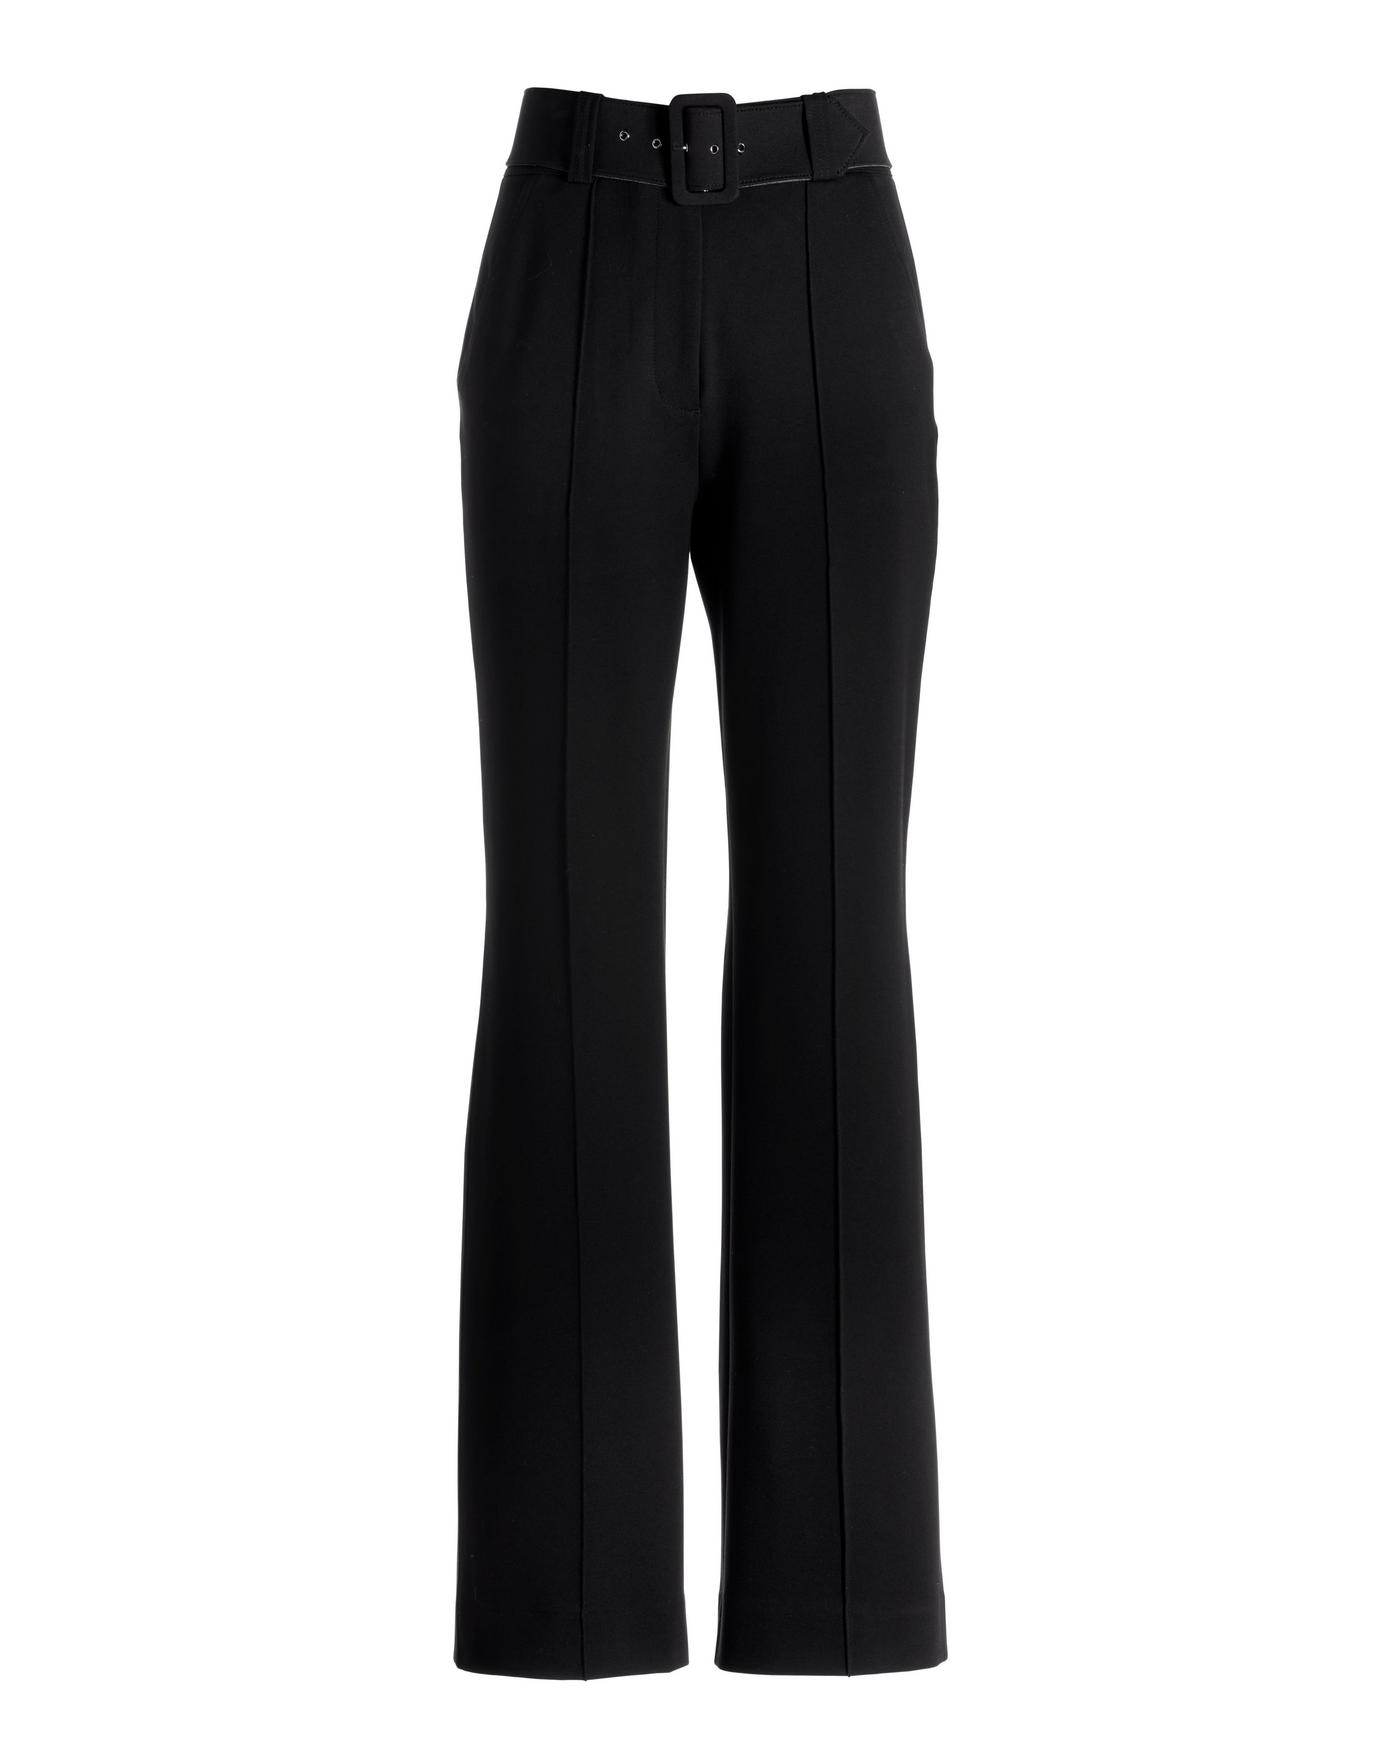 Lands End Womens Black Ponte Knit Pants Size S 6-8 Zipper Pockets Elastic  Waist